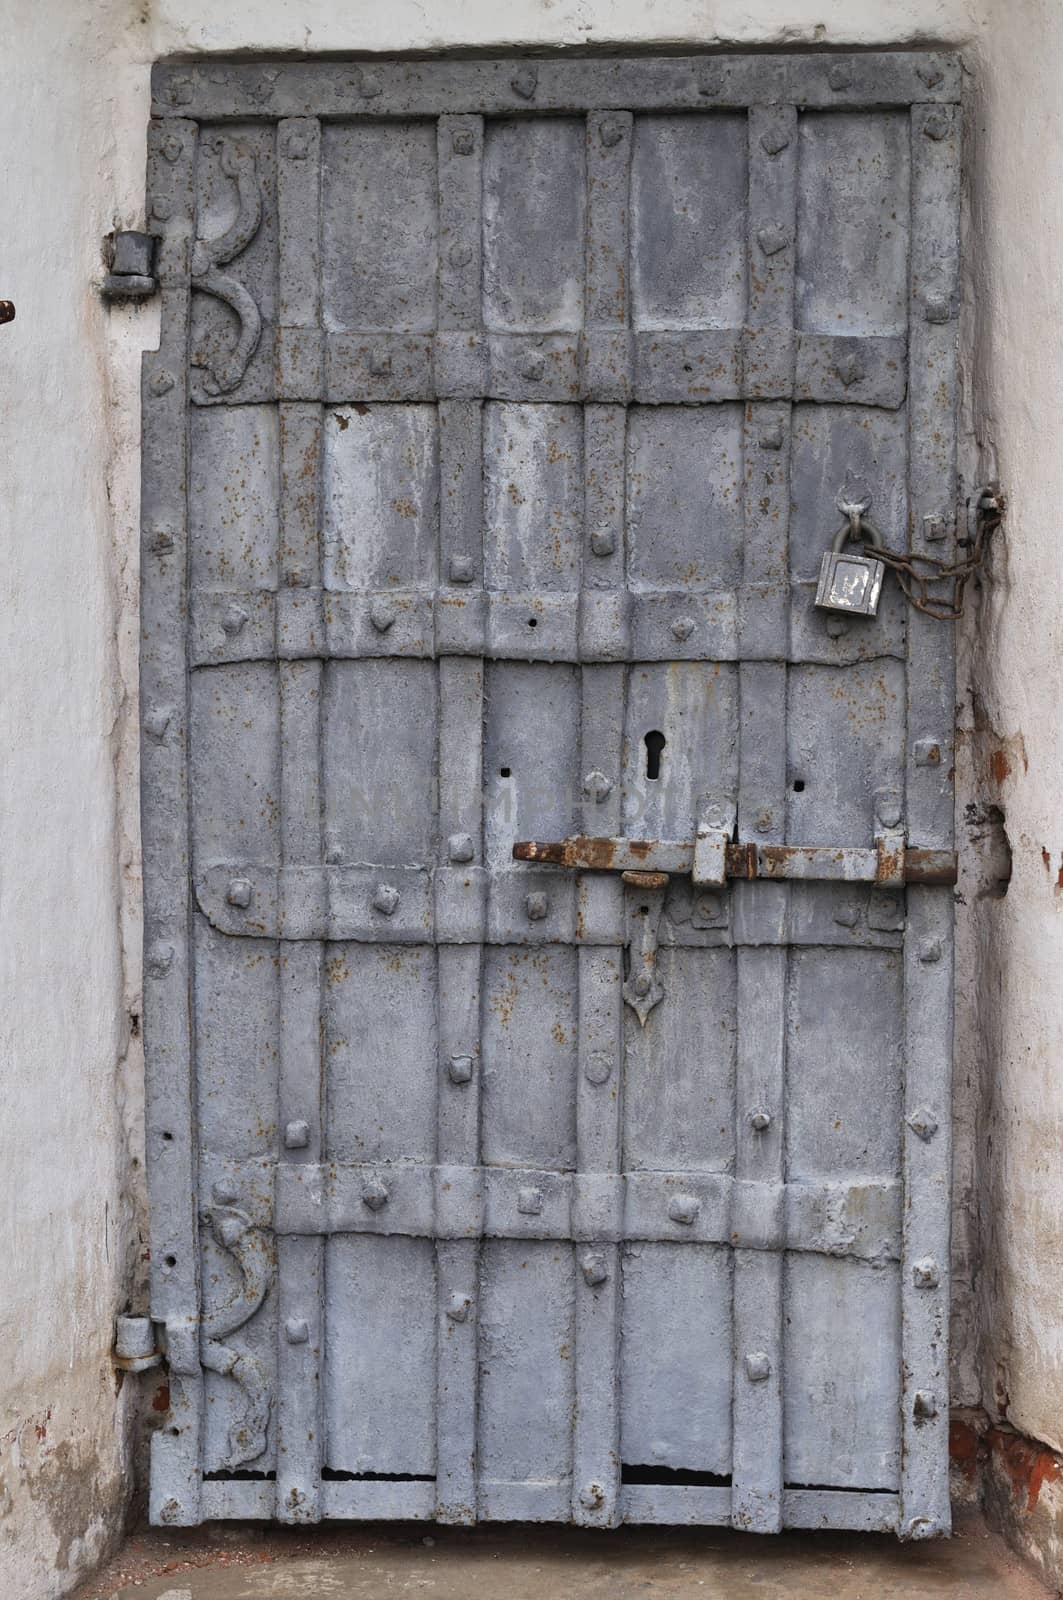 Closeup of ancient rusty iron gate with padlock